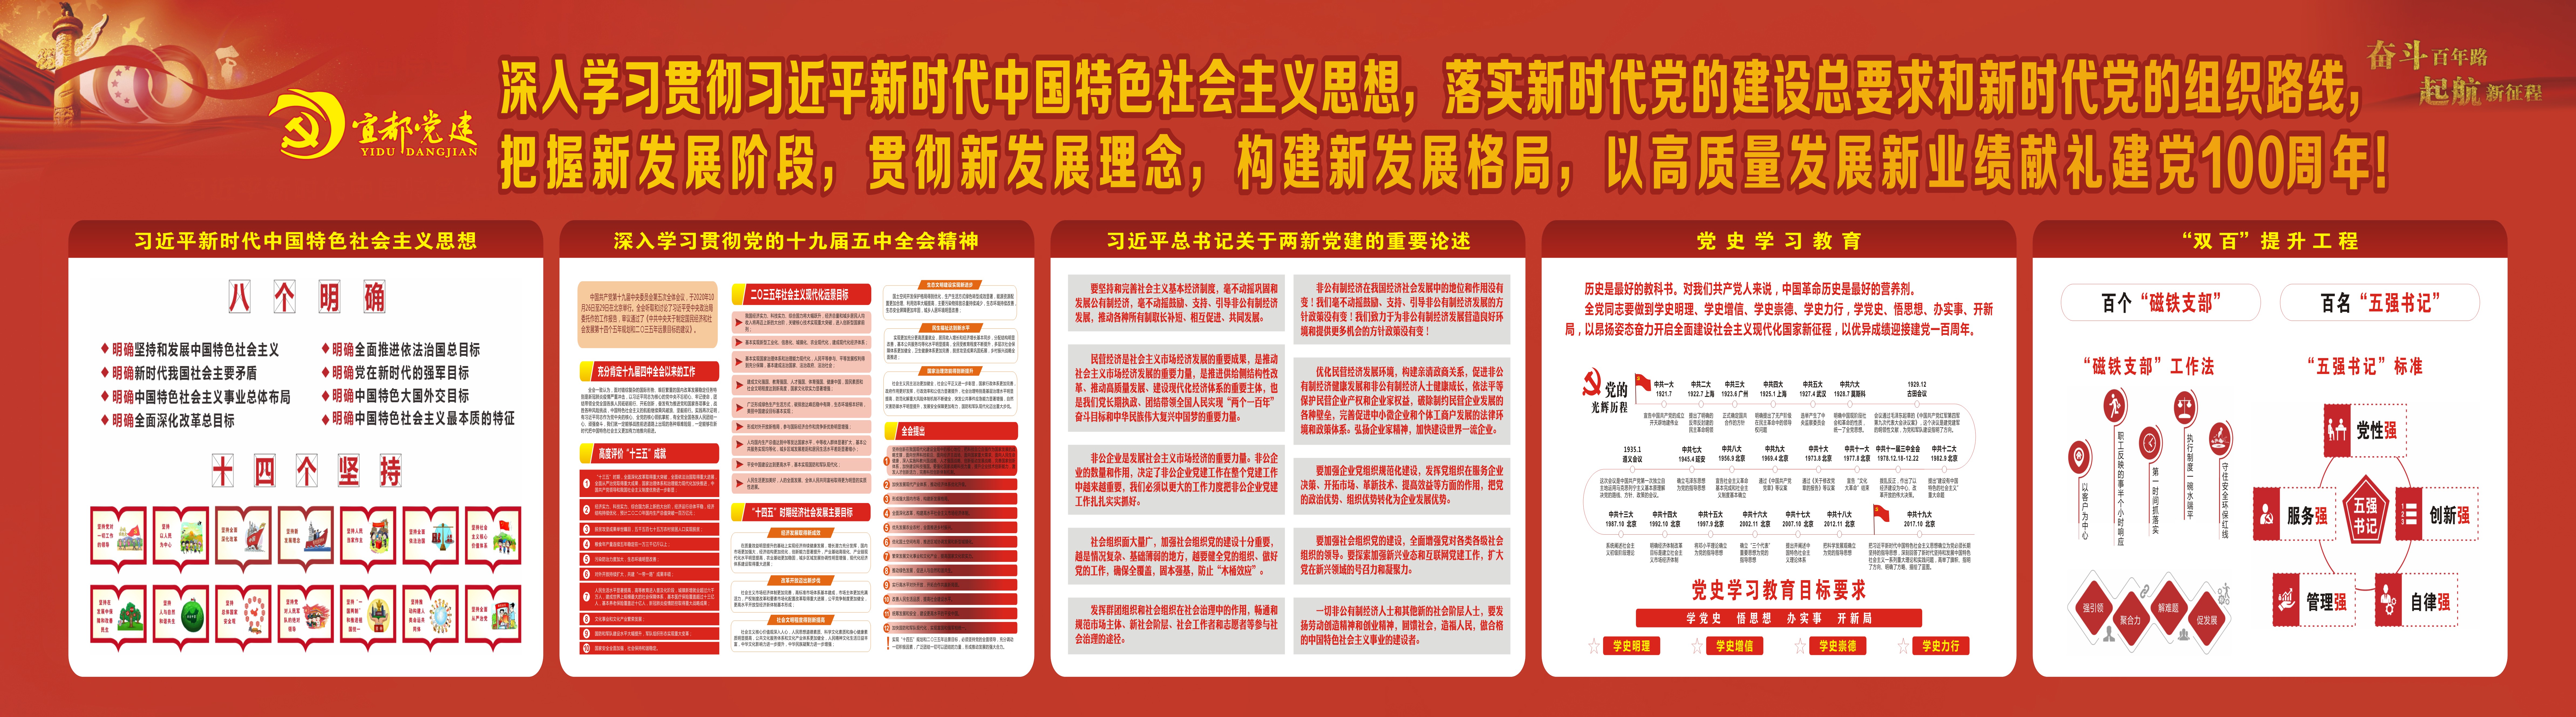 庆祝中国共产党成立100周年期刊.jpg